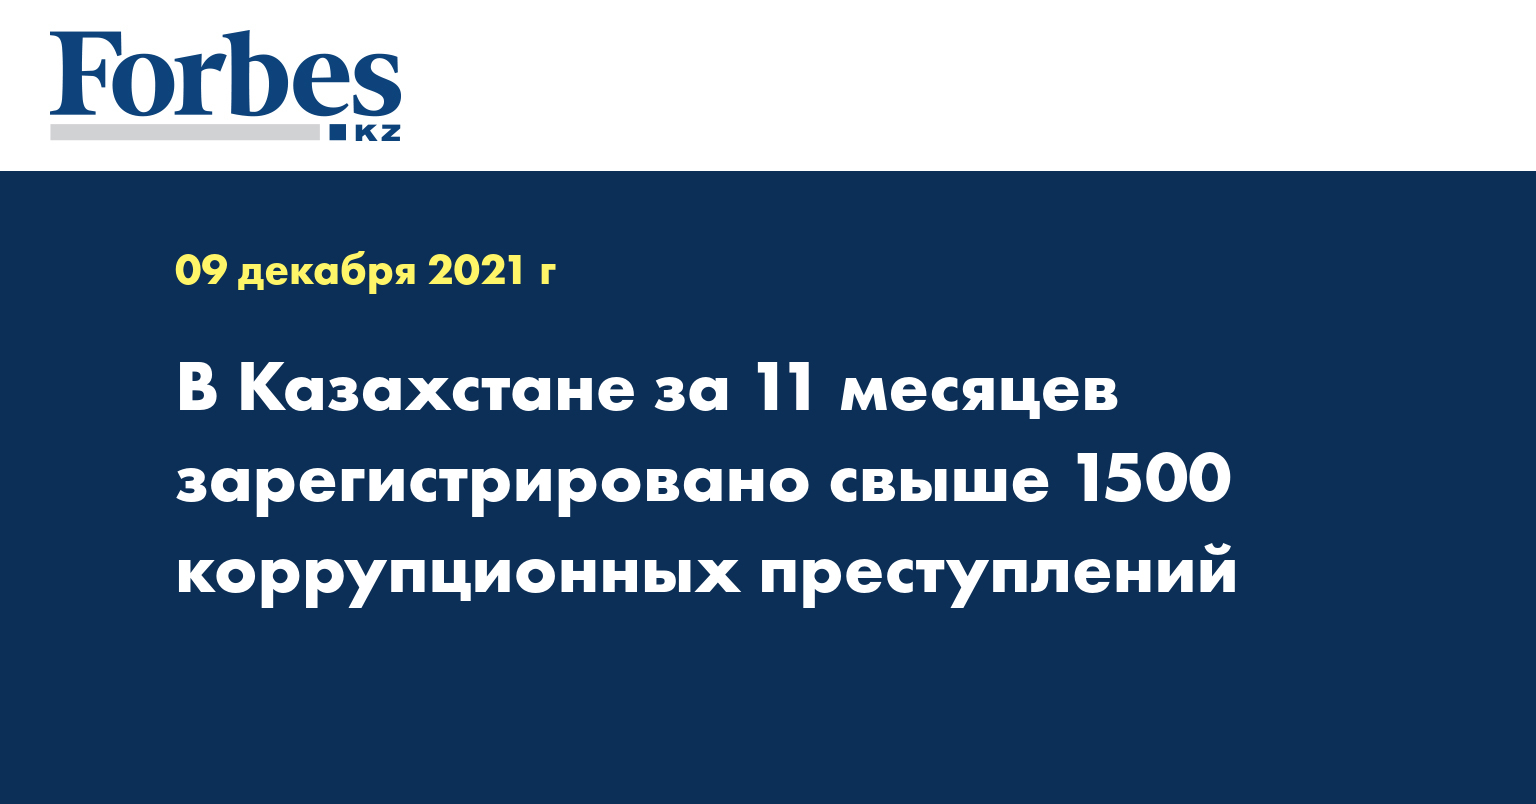 В Казахстане за 11 месяцев зарегистрировано свыше 1500 коррупционных преступлений